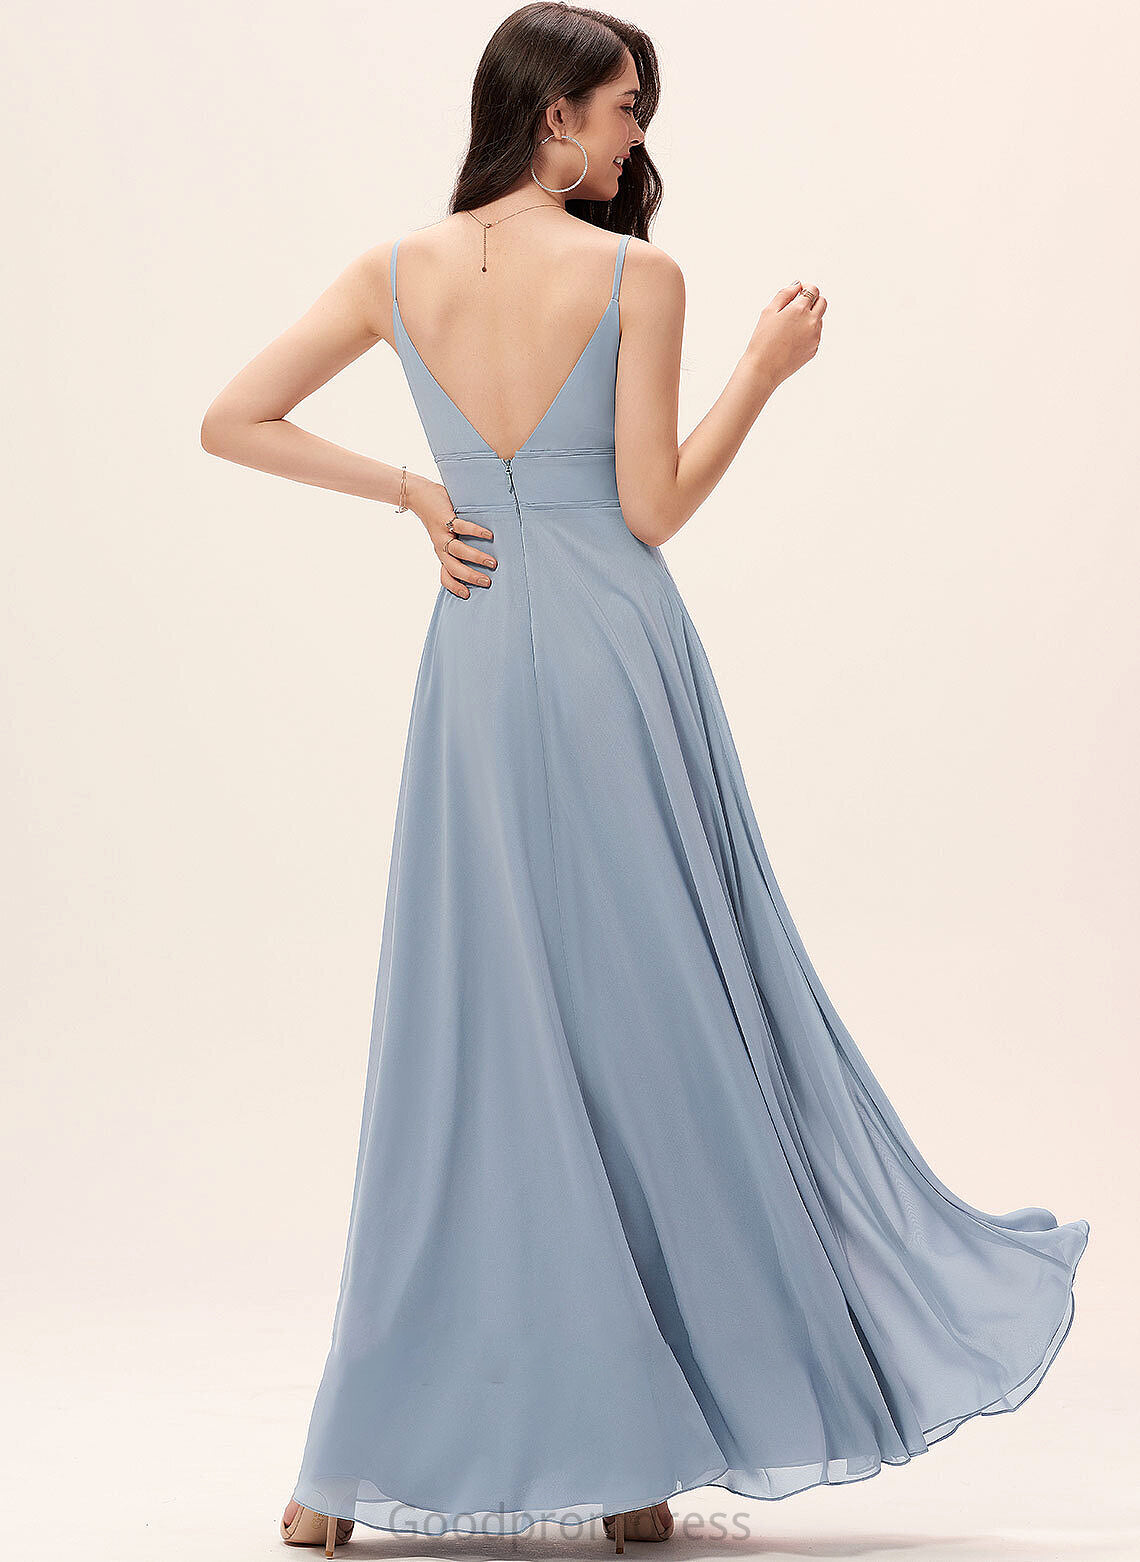 A-Line Silhouette Neckline Length Straps V-neck Fabric Floor-Length Nadia Sleeveless V-Neck A-Line/Princess Bridesmaid Dresses